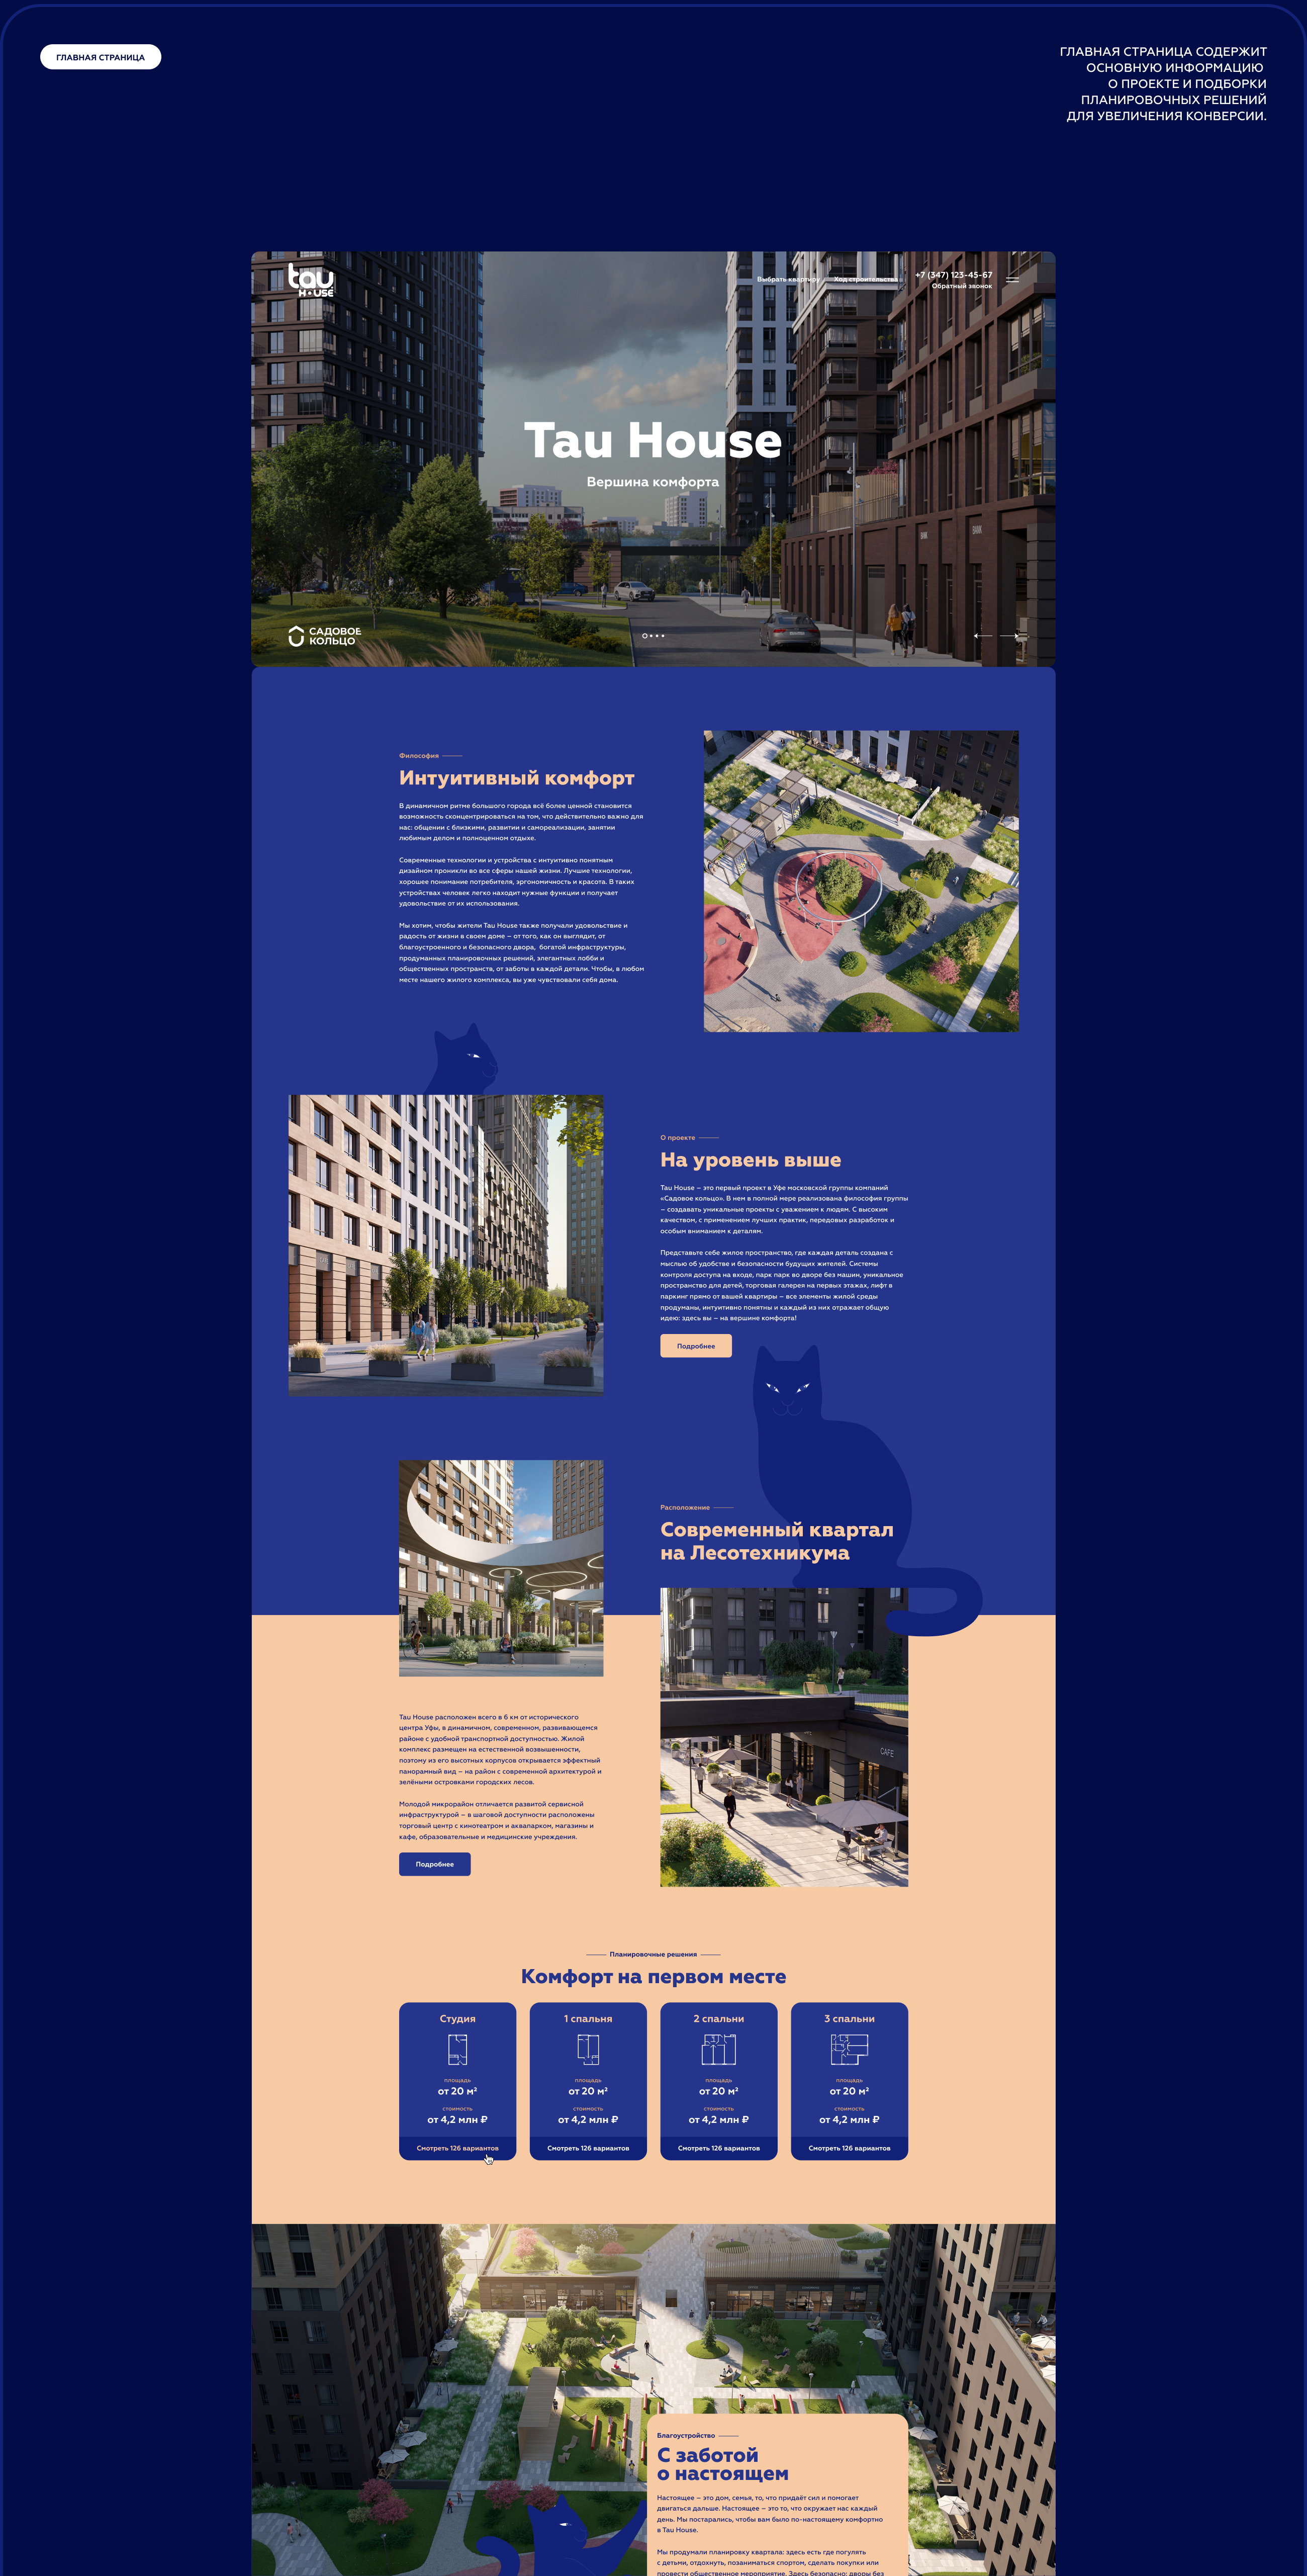 Tau House | Сайт для жилого комплекса — Изображение №2 — Интерфейсы на Dprofile